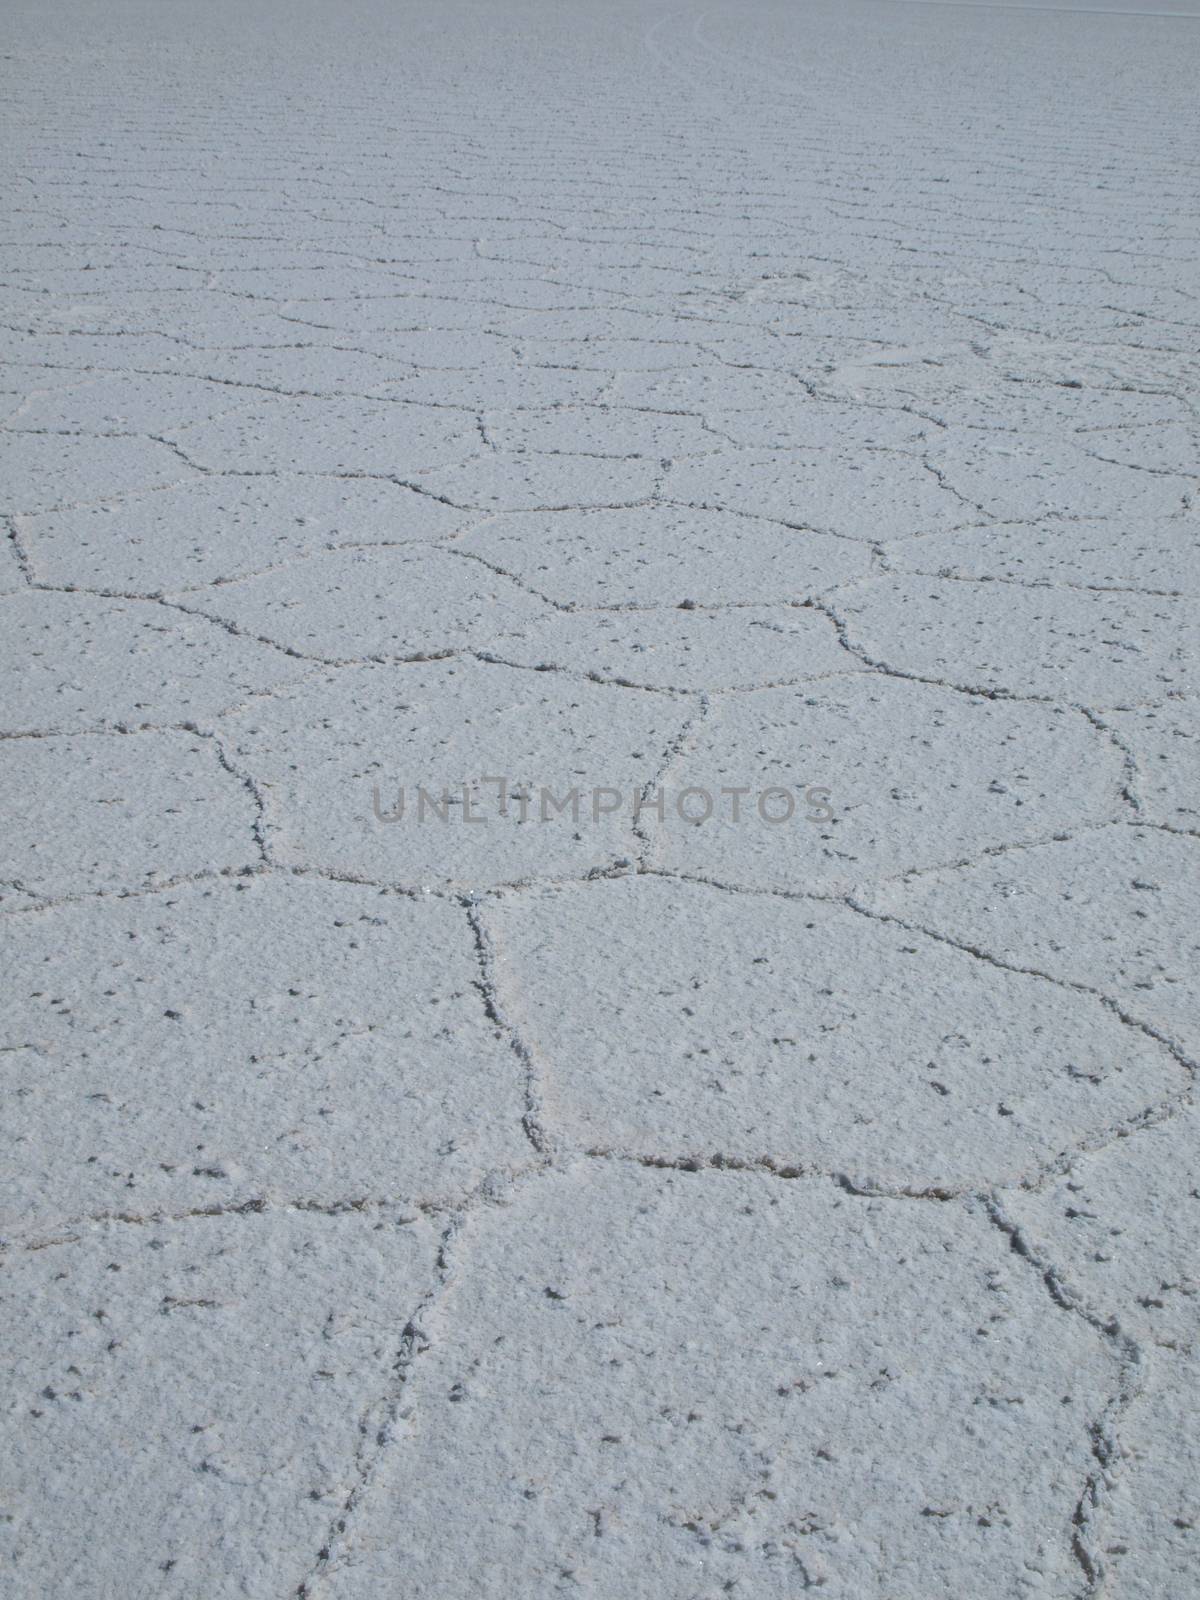 Uyuni Salt Flat - Salar de Uyuni (Bolivia)